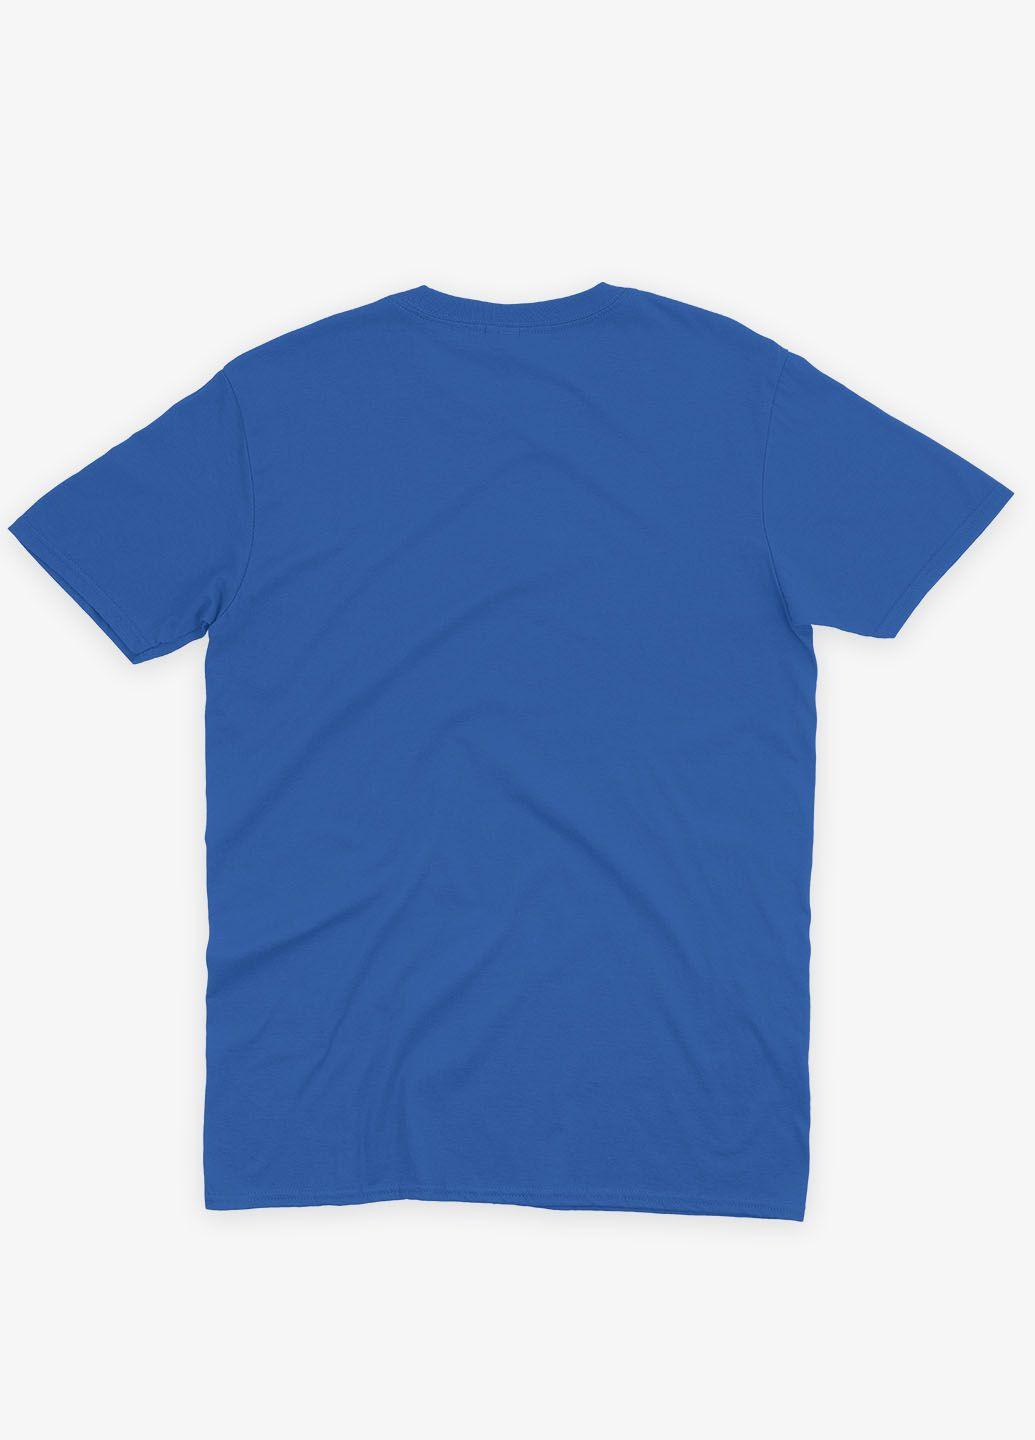 Синя демісезонна футболка для хлопчика з принтом супергероя - людина-павук (ts001-1-brr-006-014-066-b) Modno